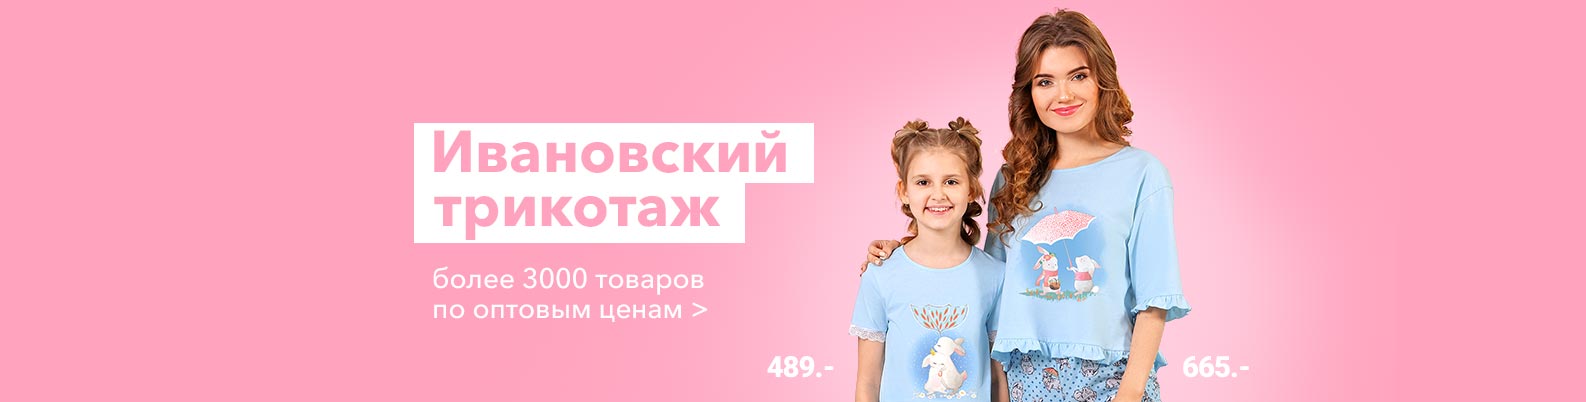 Optrf ru оптовый интернет магазин одежды. Хэппи Веар взрослые. Хэппи Веар sale 75% на весь импорт.